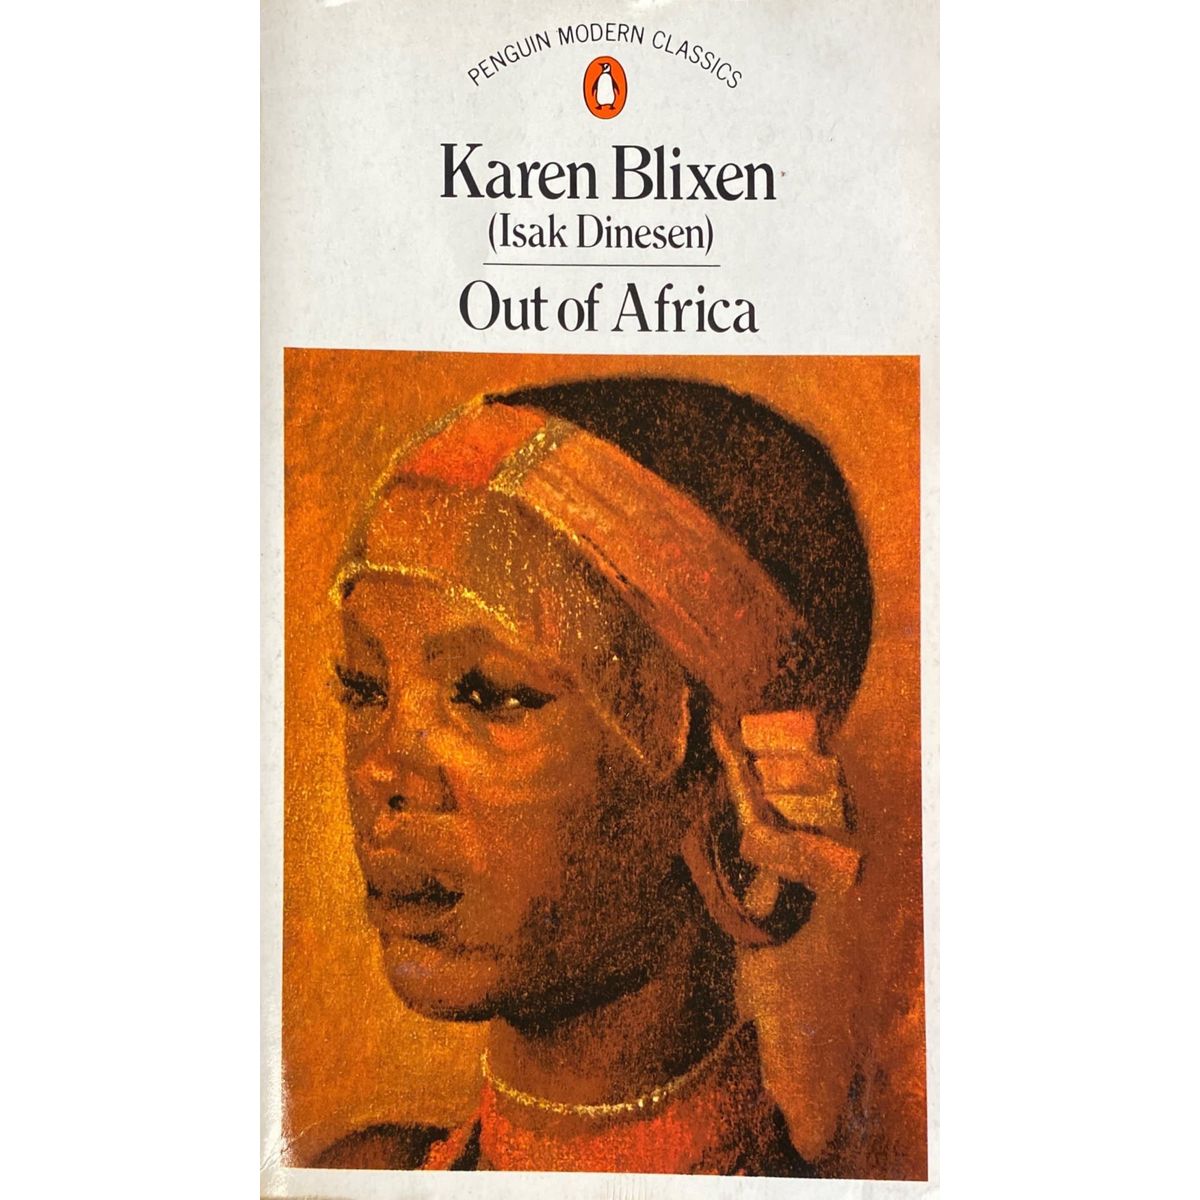 ISBN: 9780140009132 / 0140009132 - Out of Africa by Karen Blixen [1987]